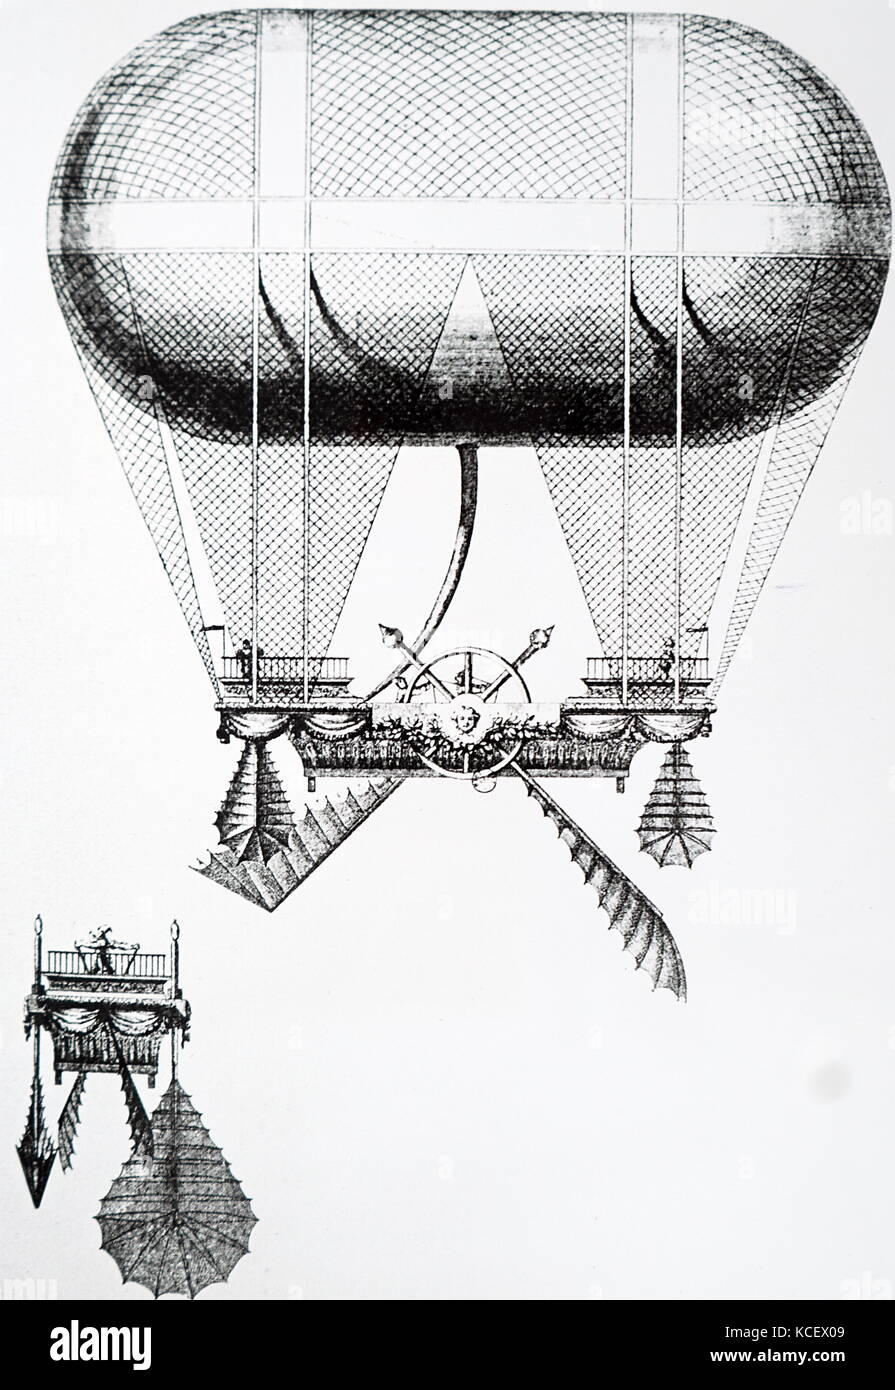 Incisione Carra della balloon dotato di ruote a palette come mezzi di propulsione. Datata xviii secolo Foto Stock